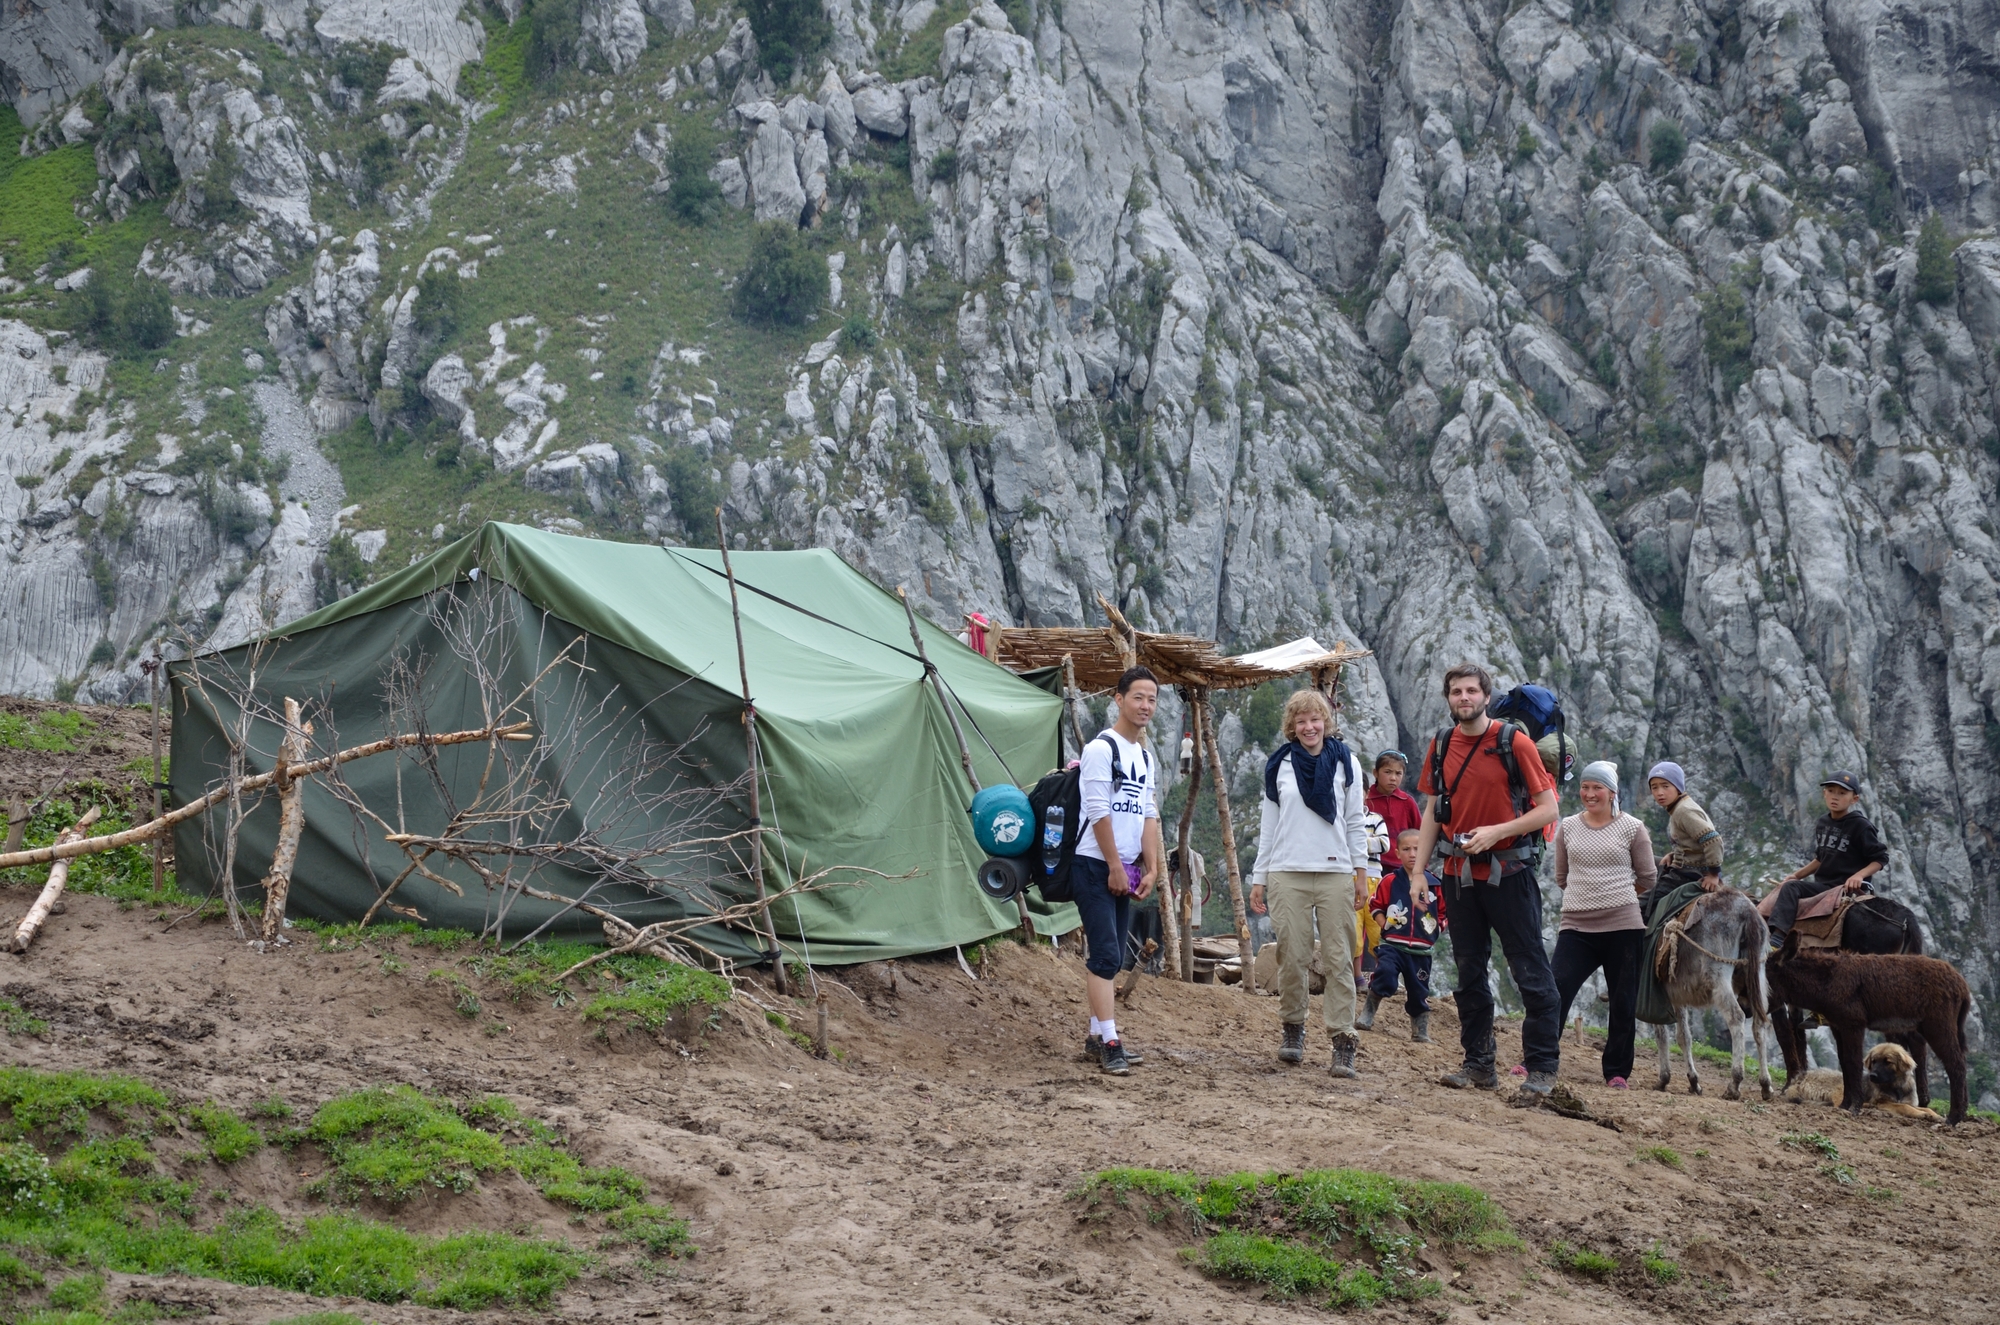 Sommerlager von Weidenutzern in Kirgistan
Quelle: S. Schütte